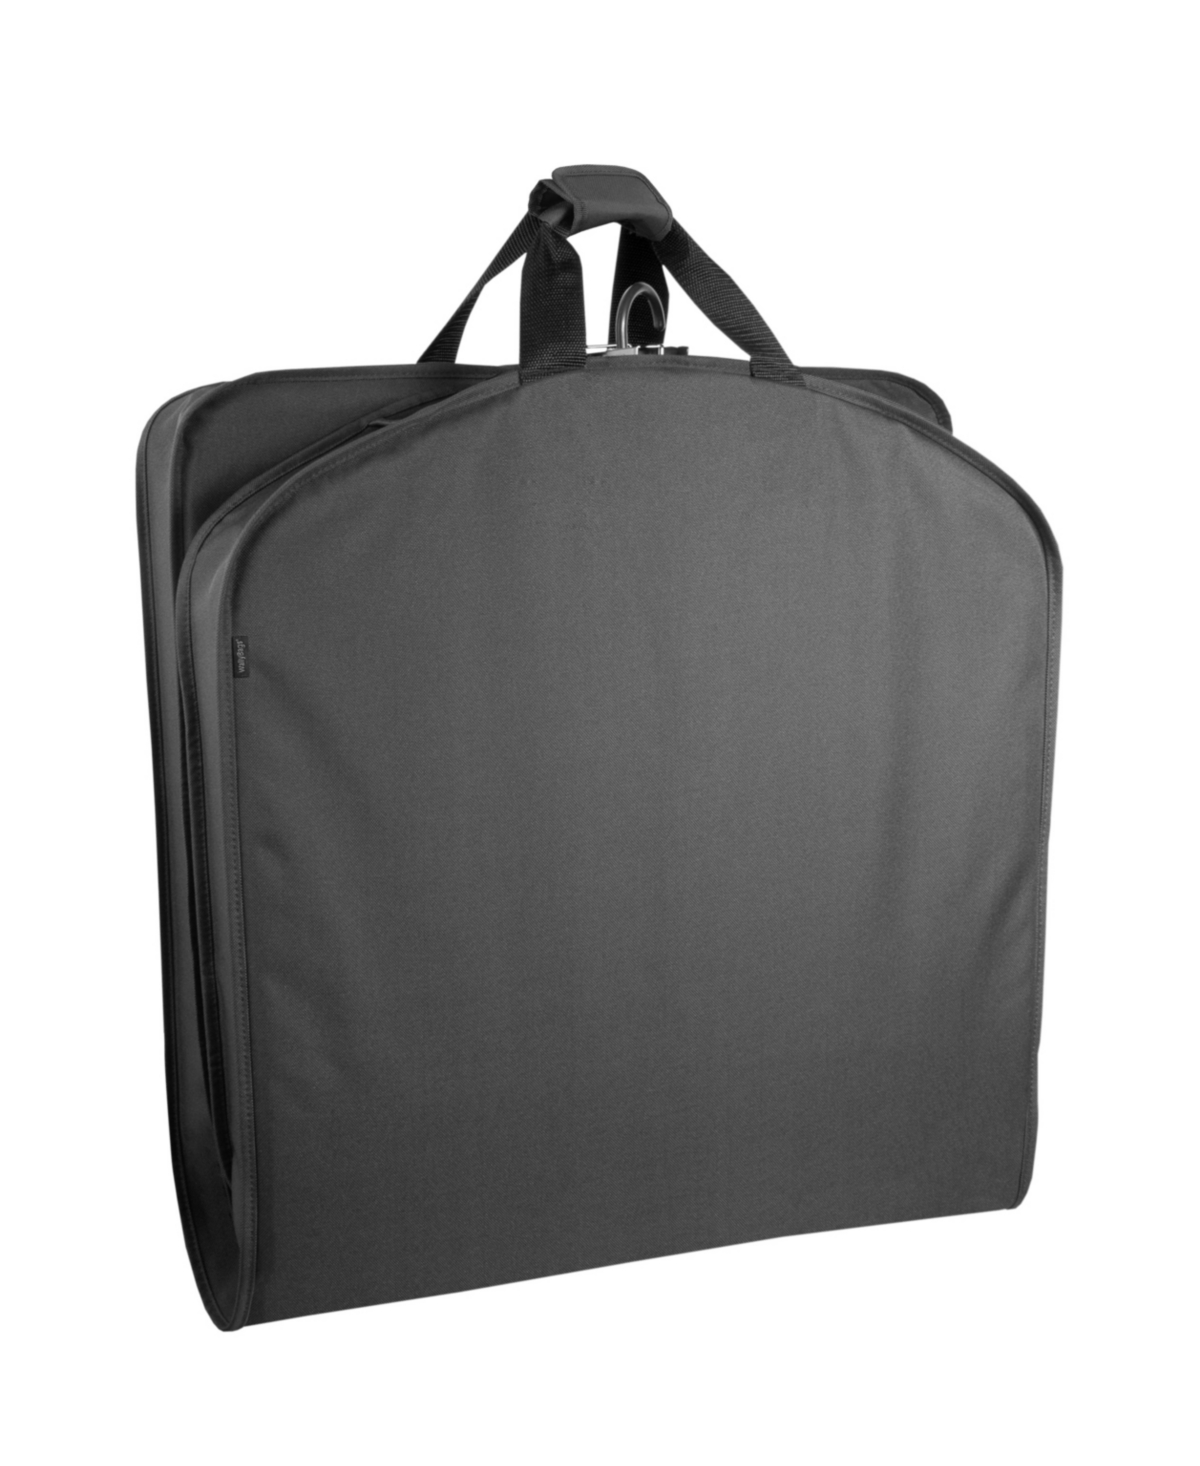 40" Deluxe Travel Garment Bag - Black